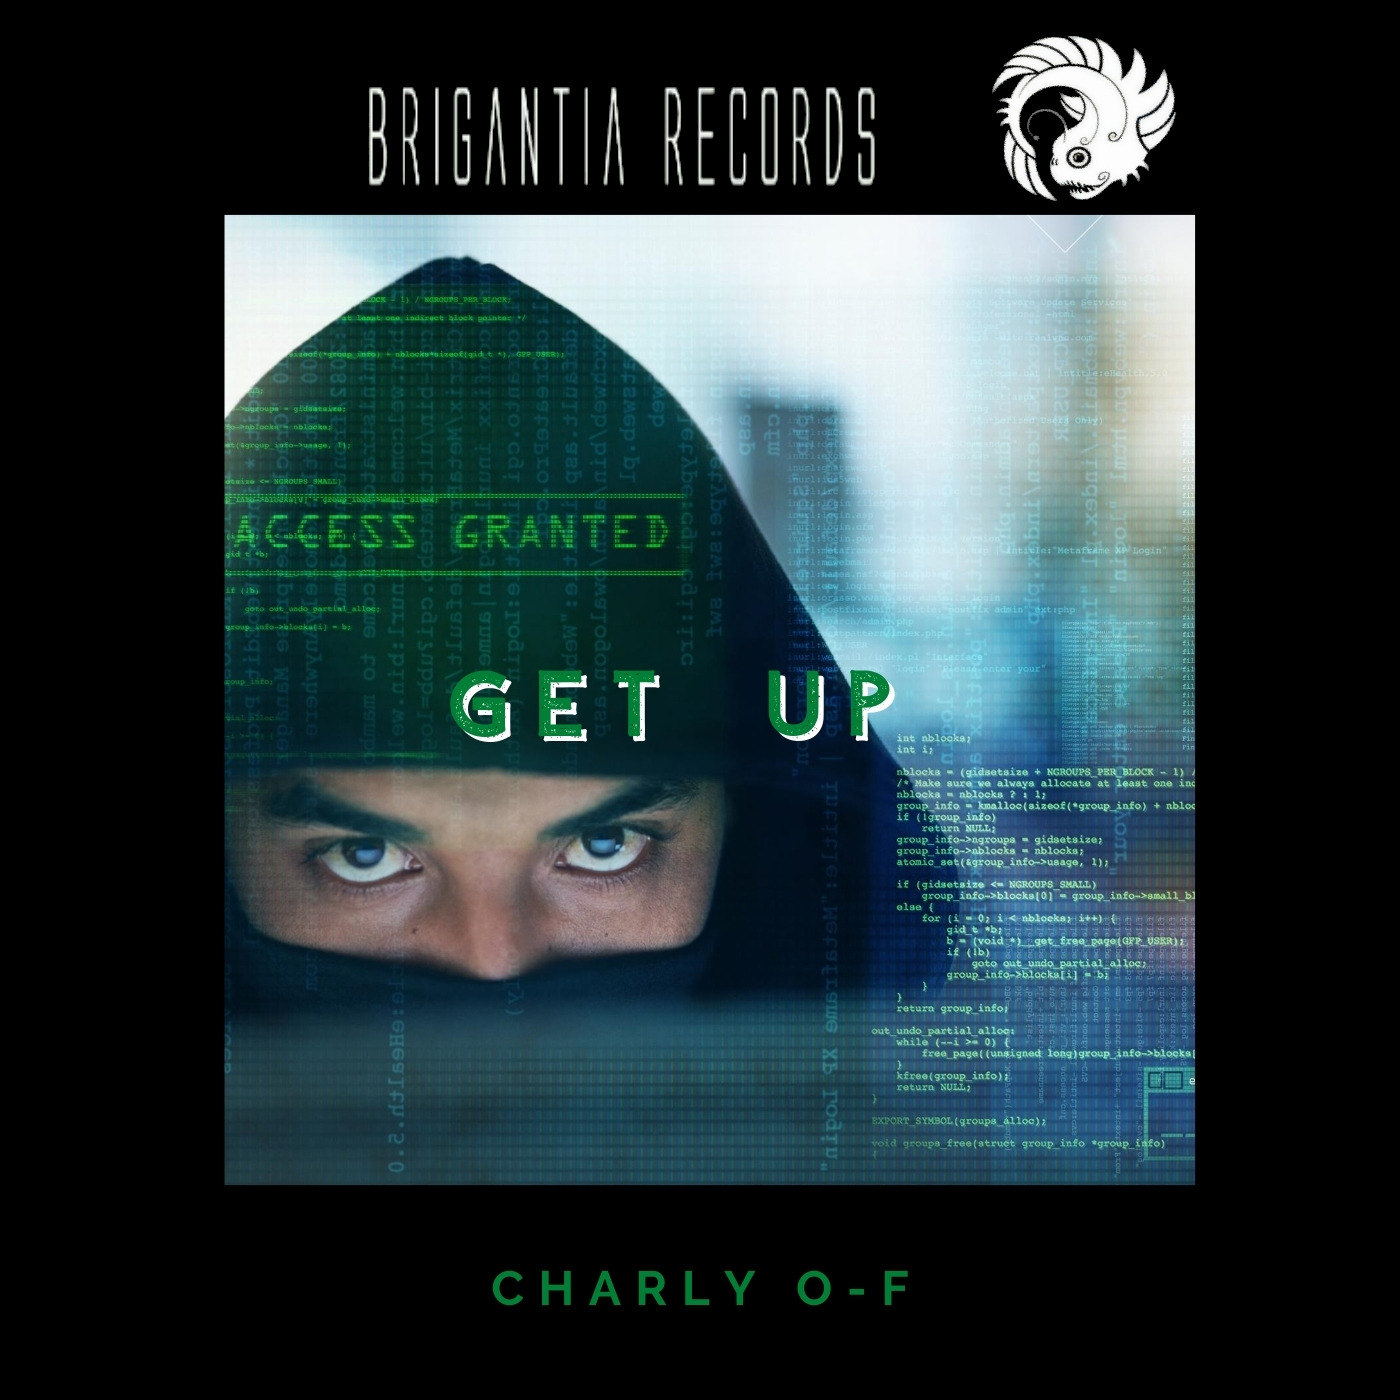 Charly O-F - Get Up  (Original Mix)